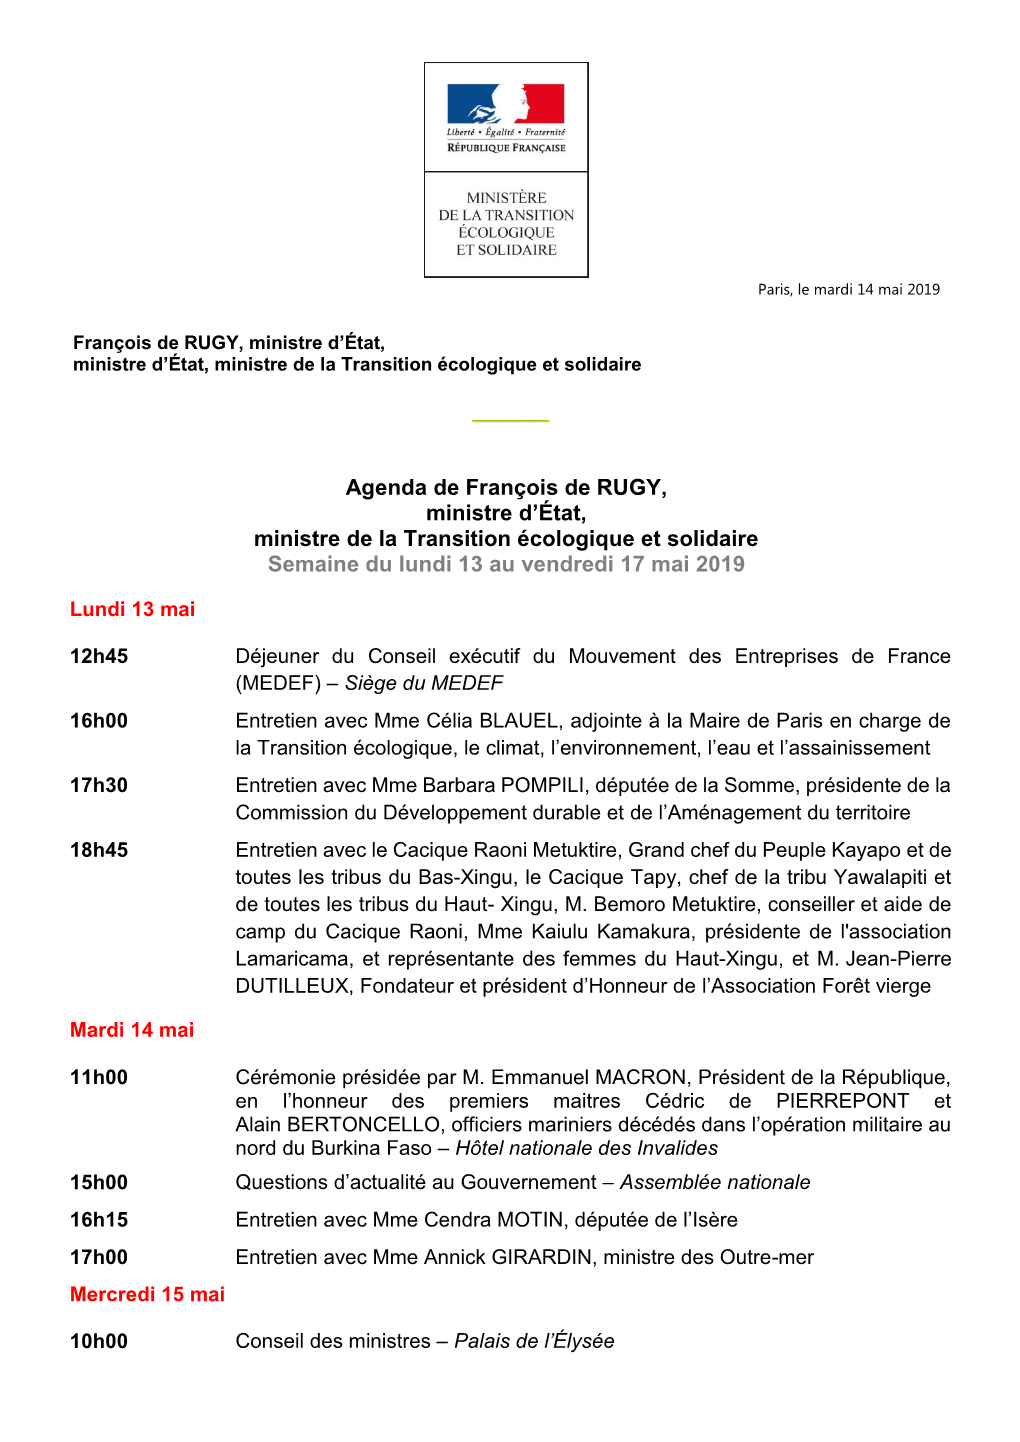 Agenda De François De RUGY, Ministre D'état, Ministre De La